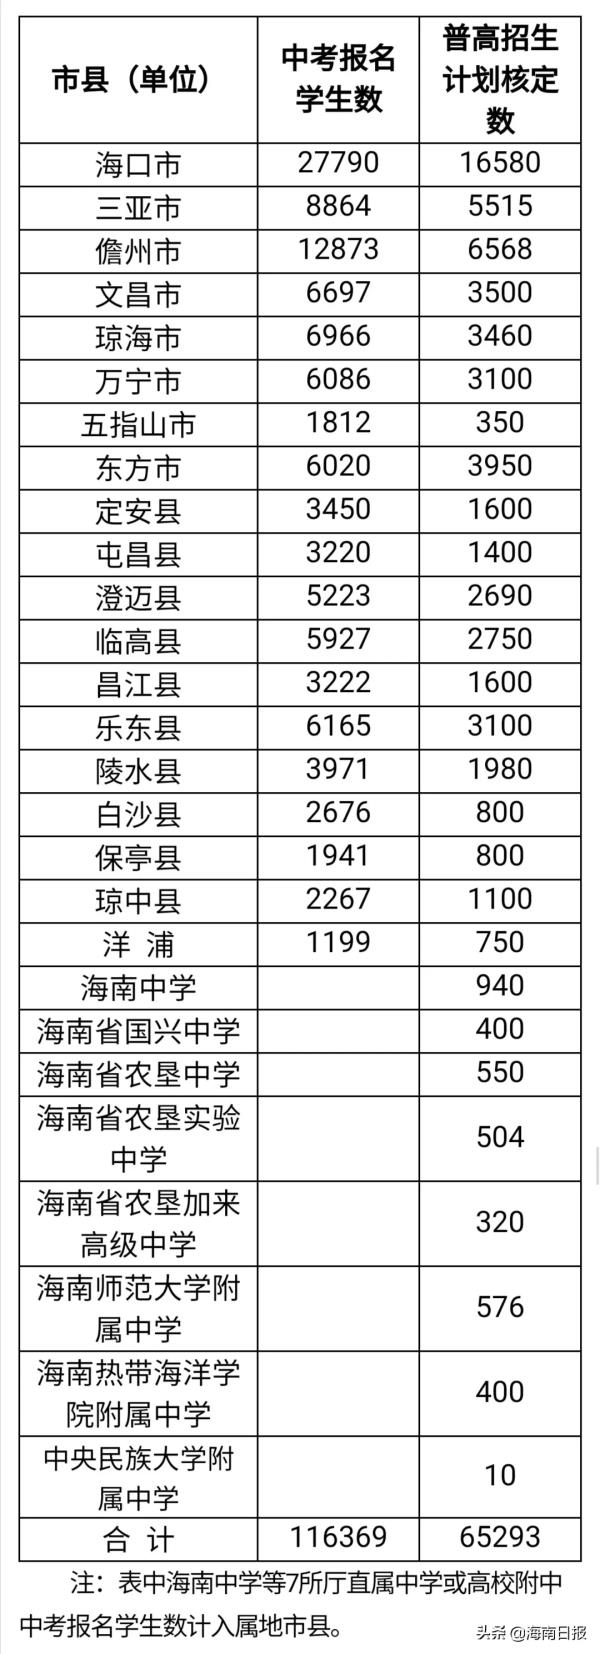 海南省高中课程设置表